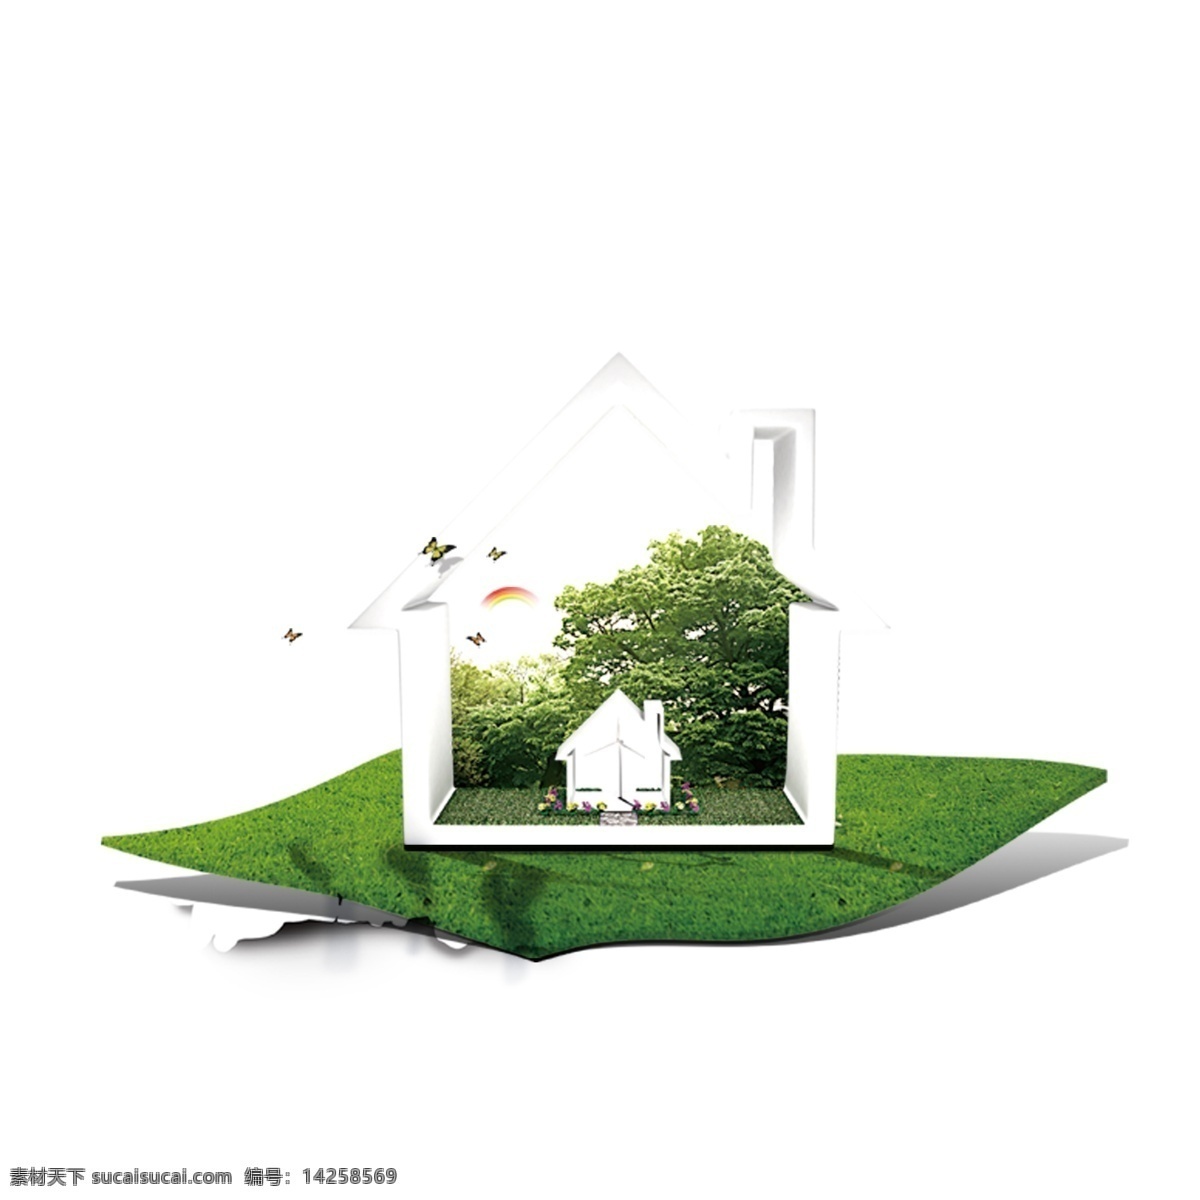 草地 上 简易 房子 环保 绿色 公益 节能 爱护地球 树木 ppt元素